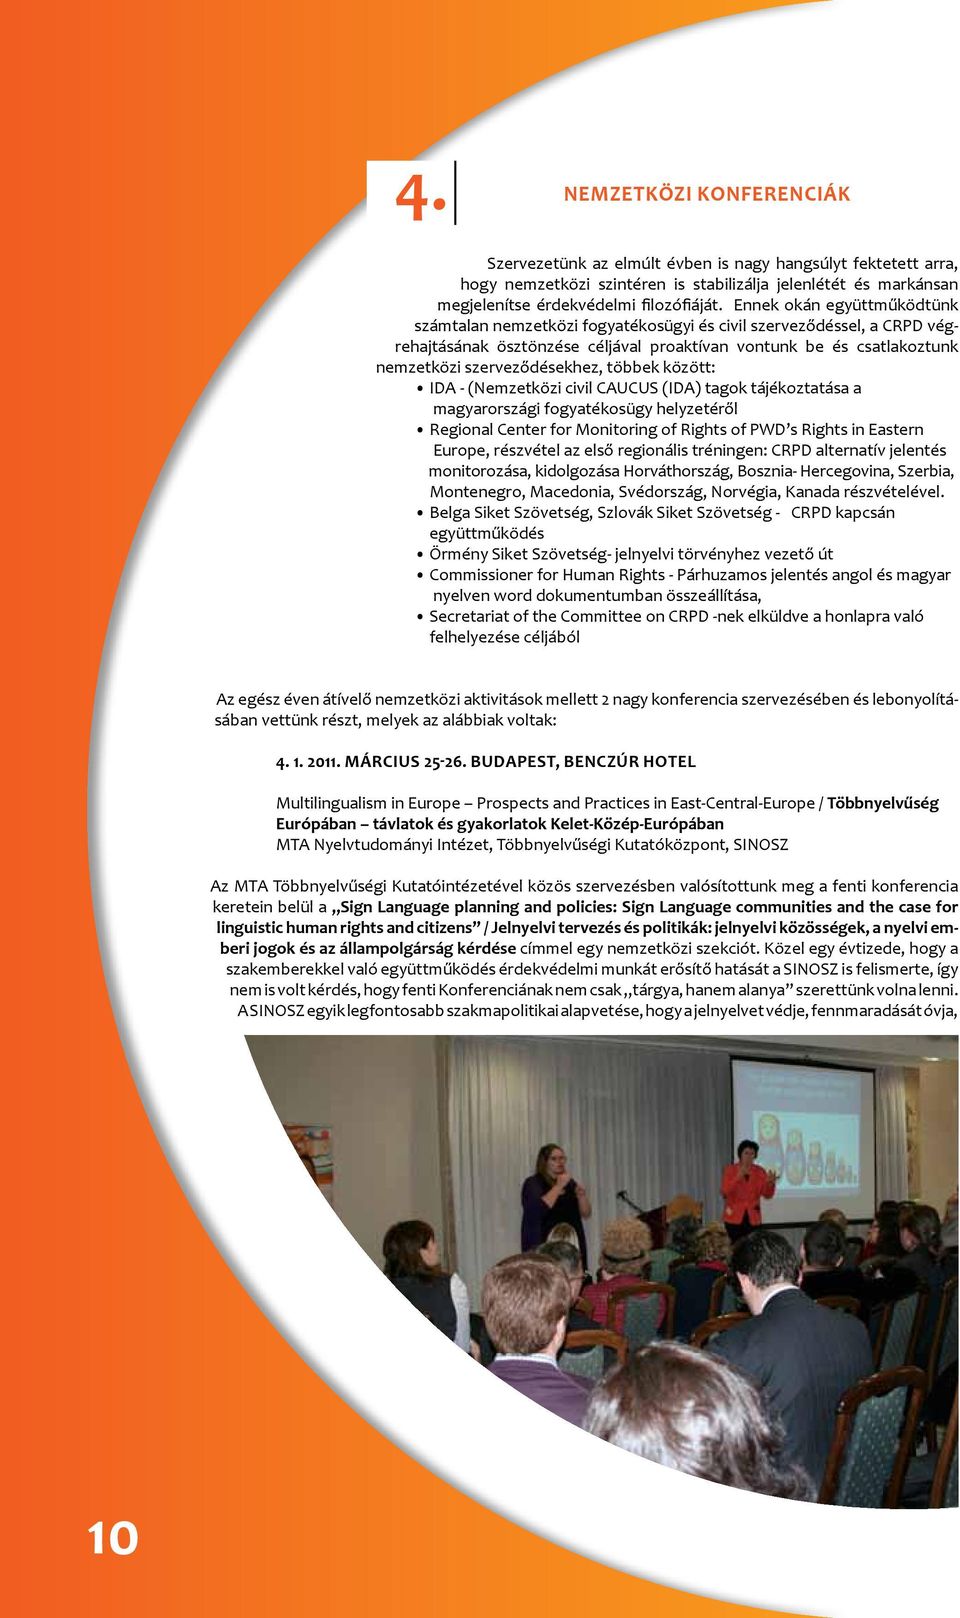 többek között: IDA - (Nemzetközi civil CAUCUS (IDA) tagok tájékoztatása a magyarországi fogyatékosügy helyzetéről Regional Center for Monitoring of Rights of PWD s Rights in Eastern Europe, részvétel